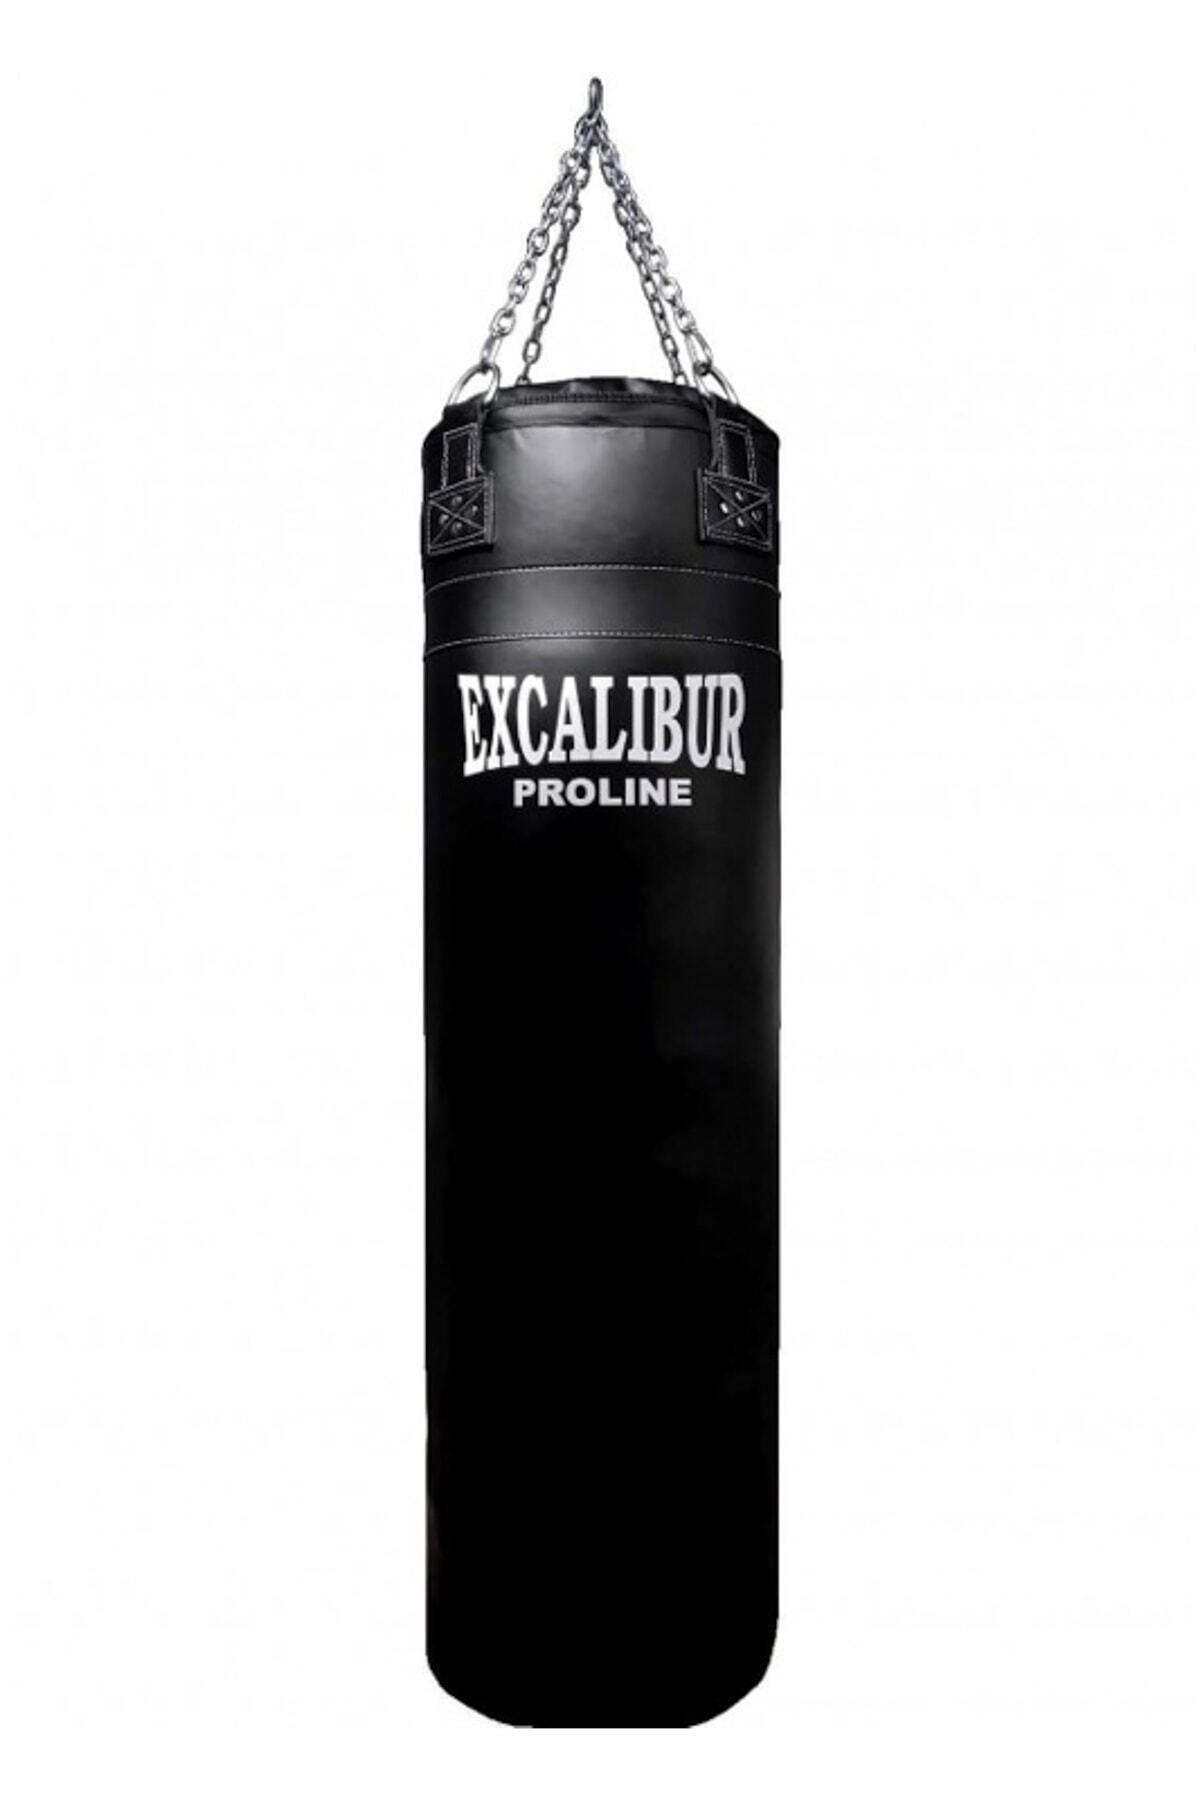 excalibur 180 cm x 40 cm proline salon tipi profesyonel boks kum torbasi fiyati yorumlari trendyol